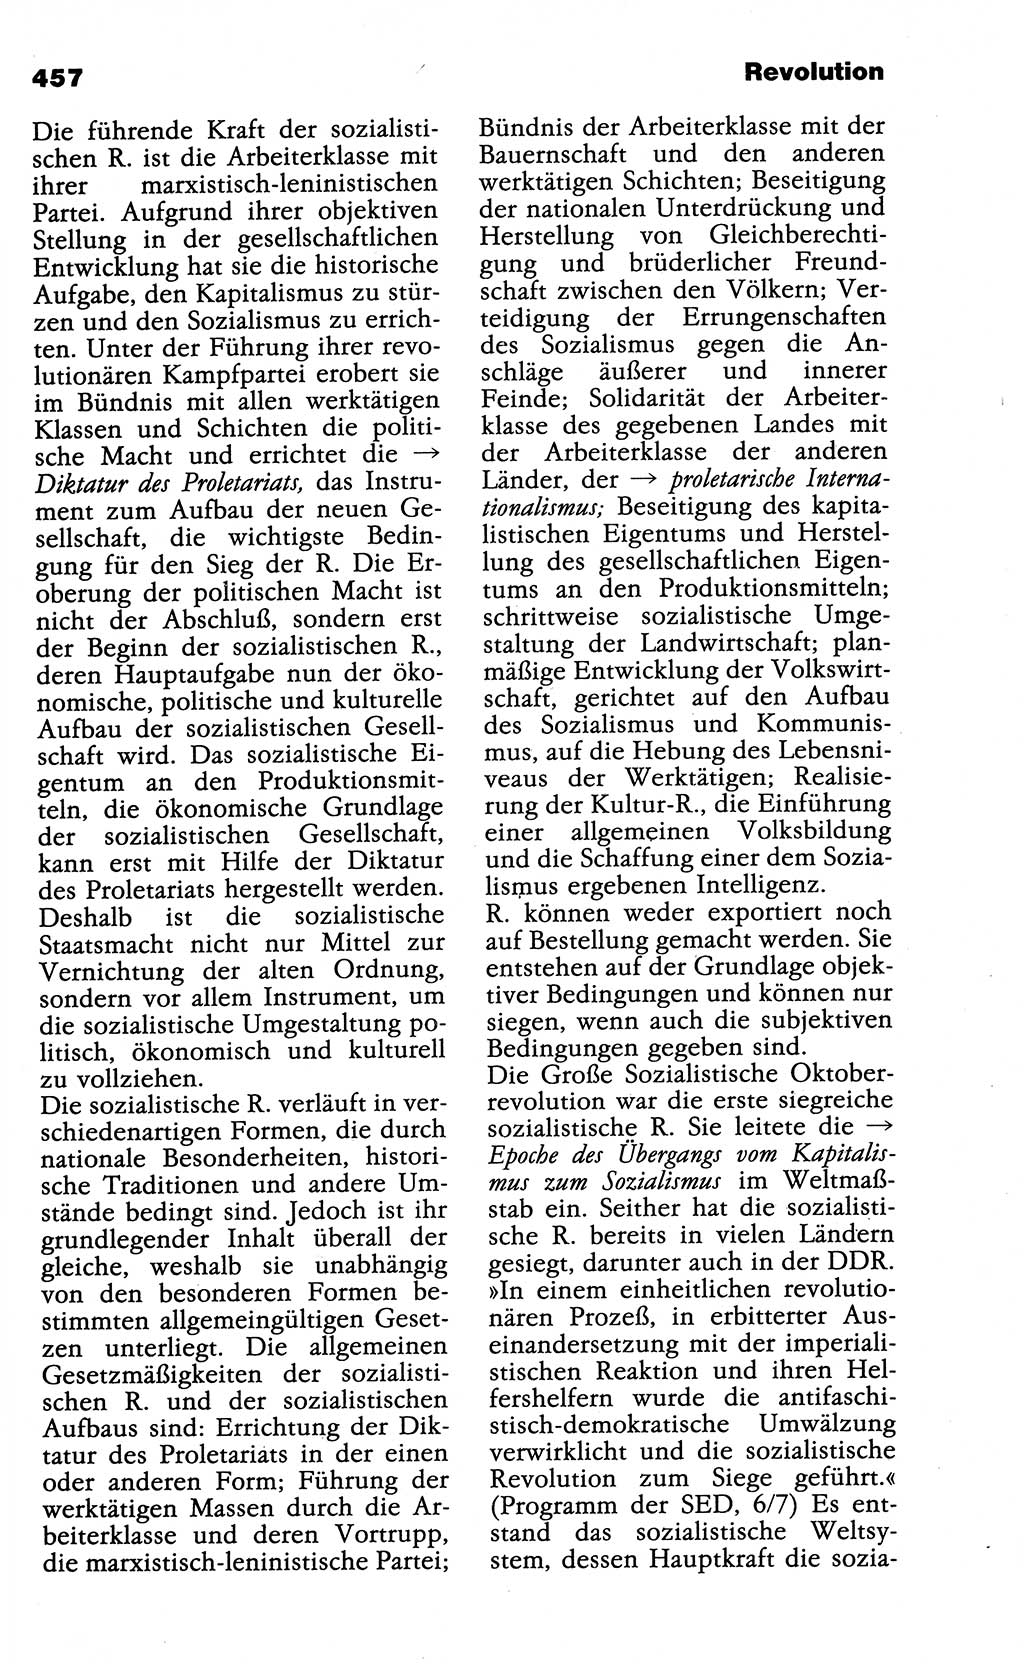 Wörterbuch der marxistisch-leninistischen Philosophie [Deutsche Demokratische Republik (DDR)] 1985, Seite 457 (Wb. ML Phil. DDR 1985, S. 457)